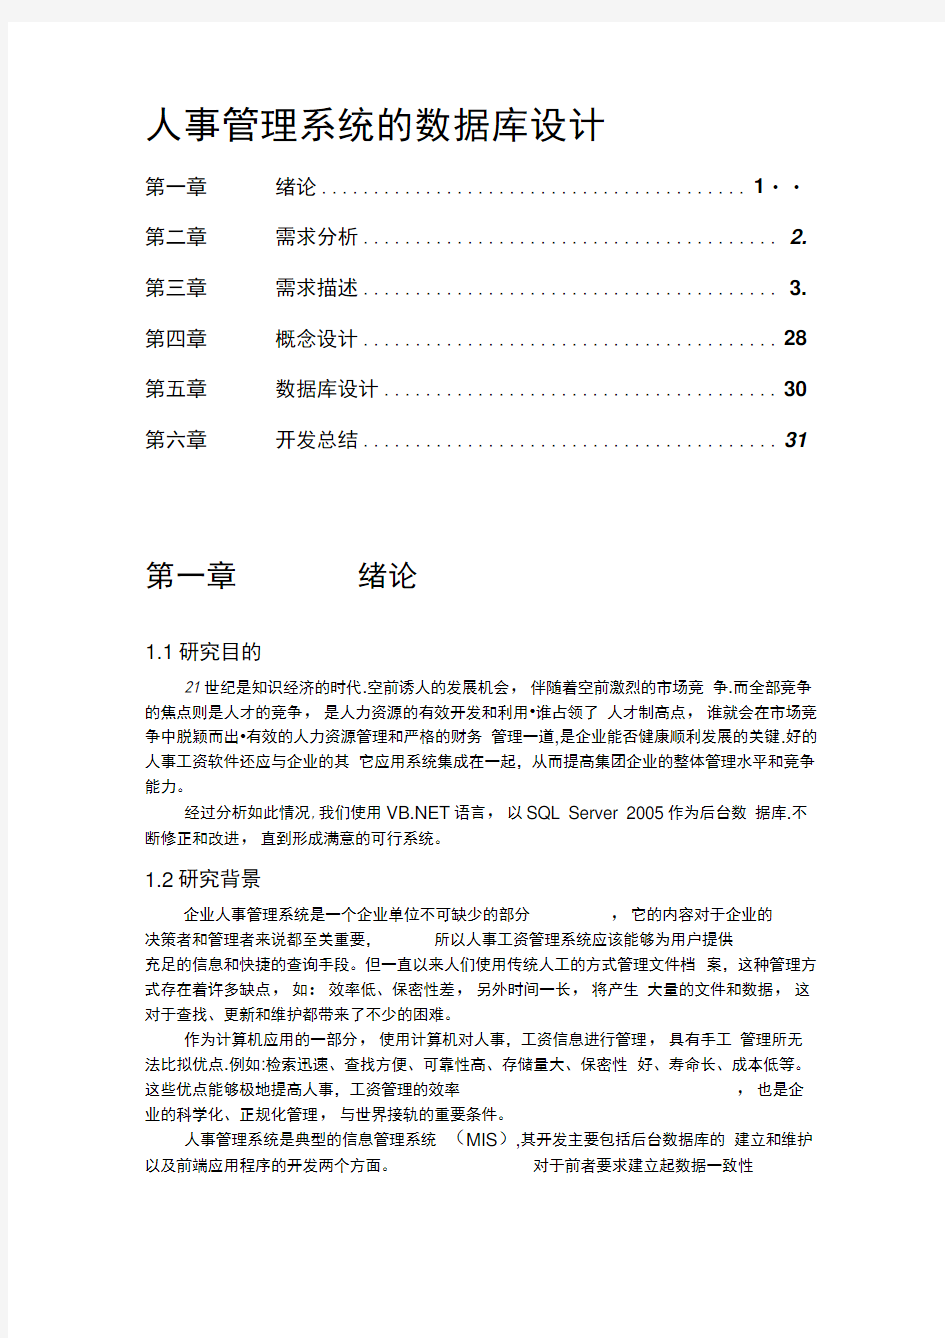 上海区块链公司人事管理系统(包括流程图)